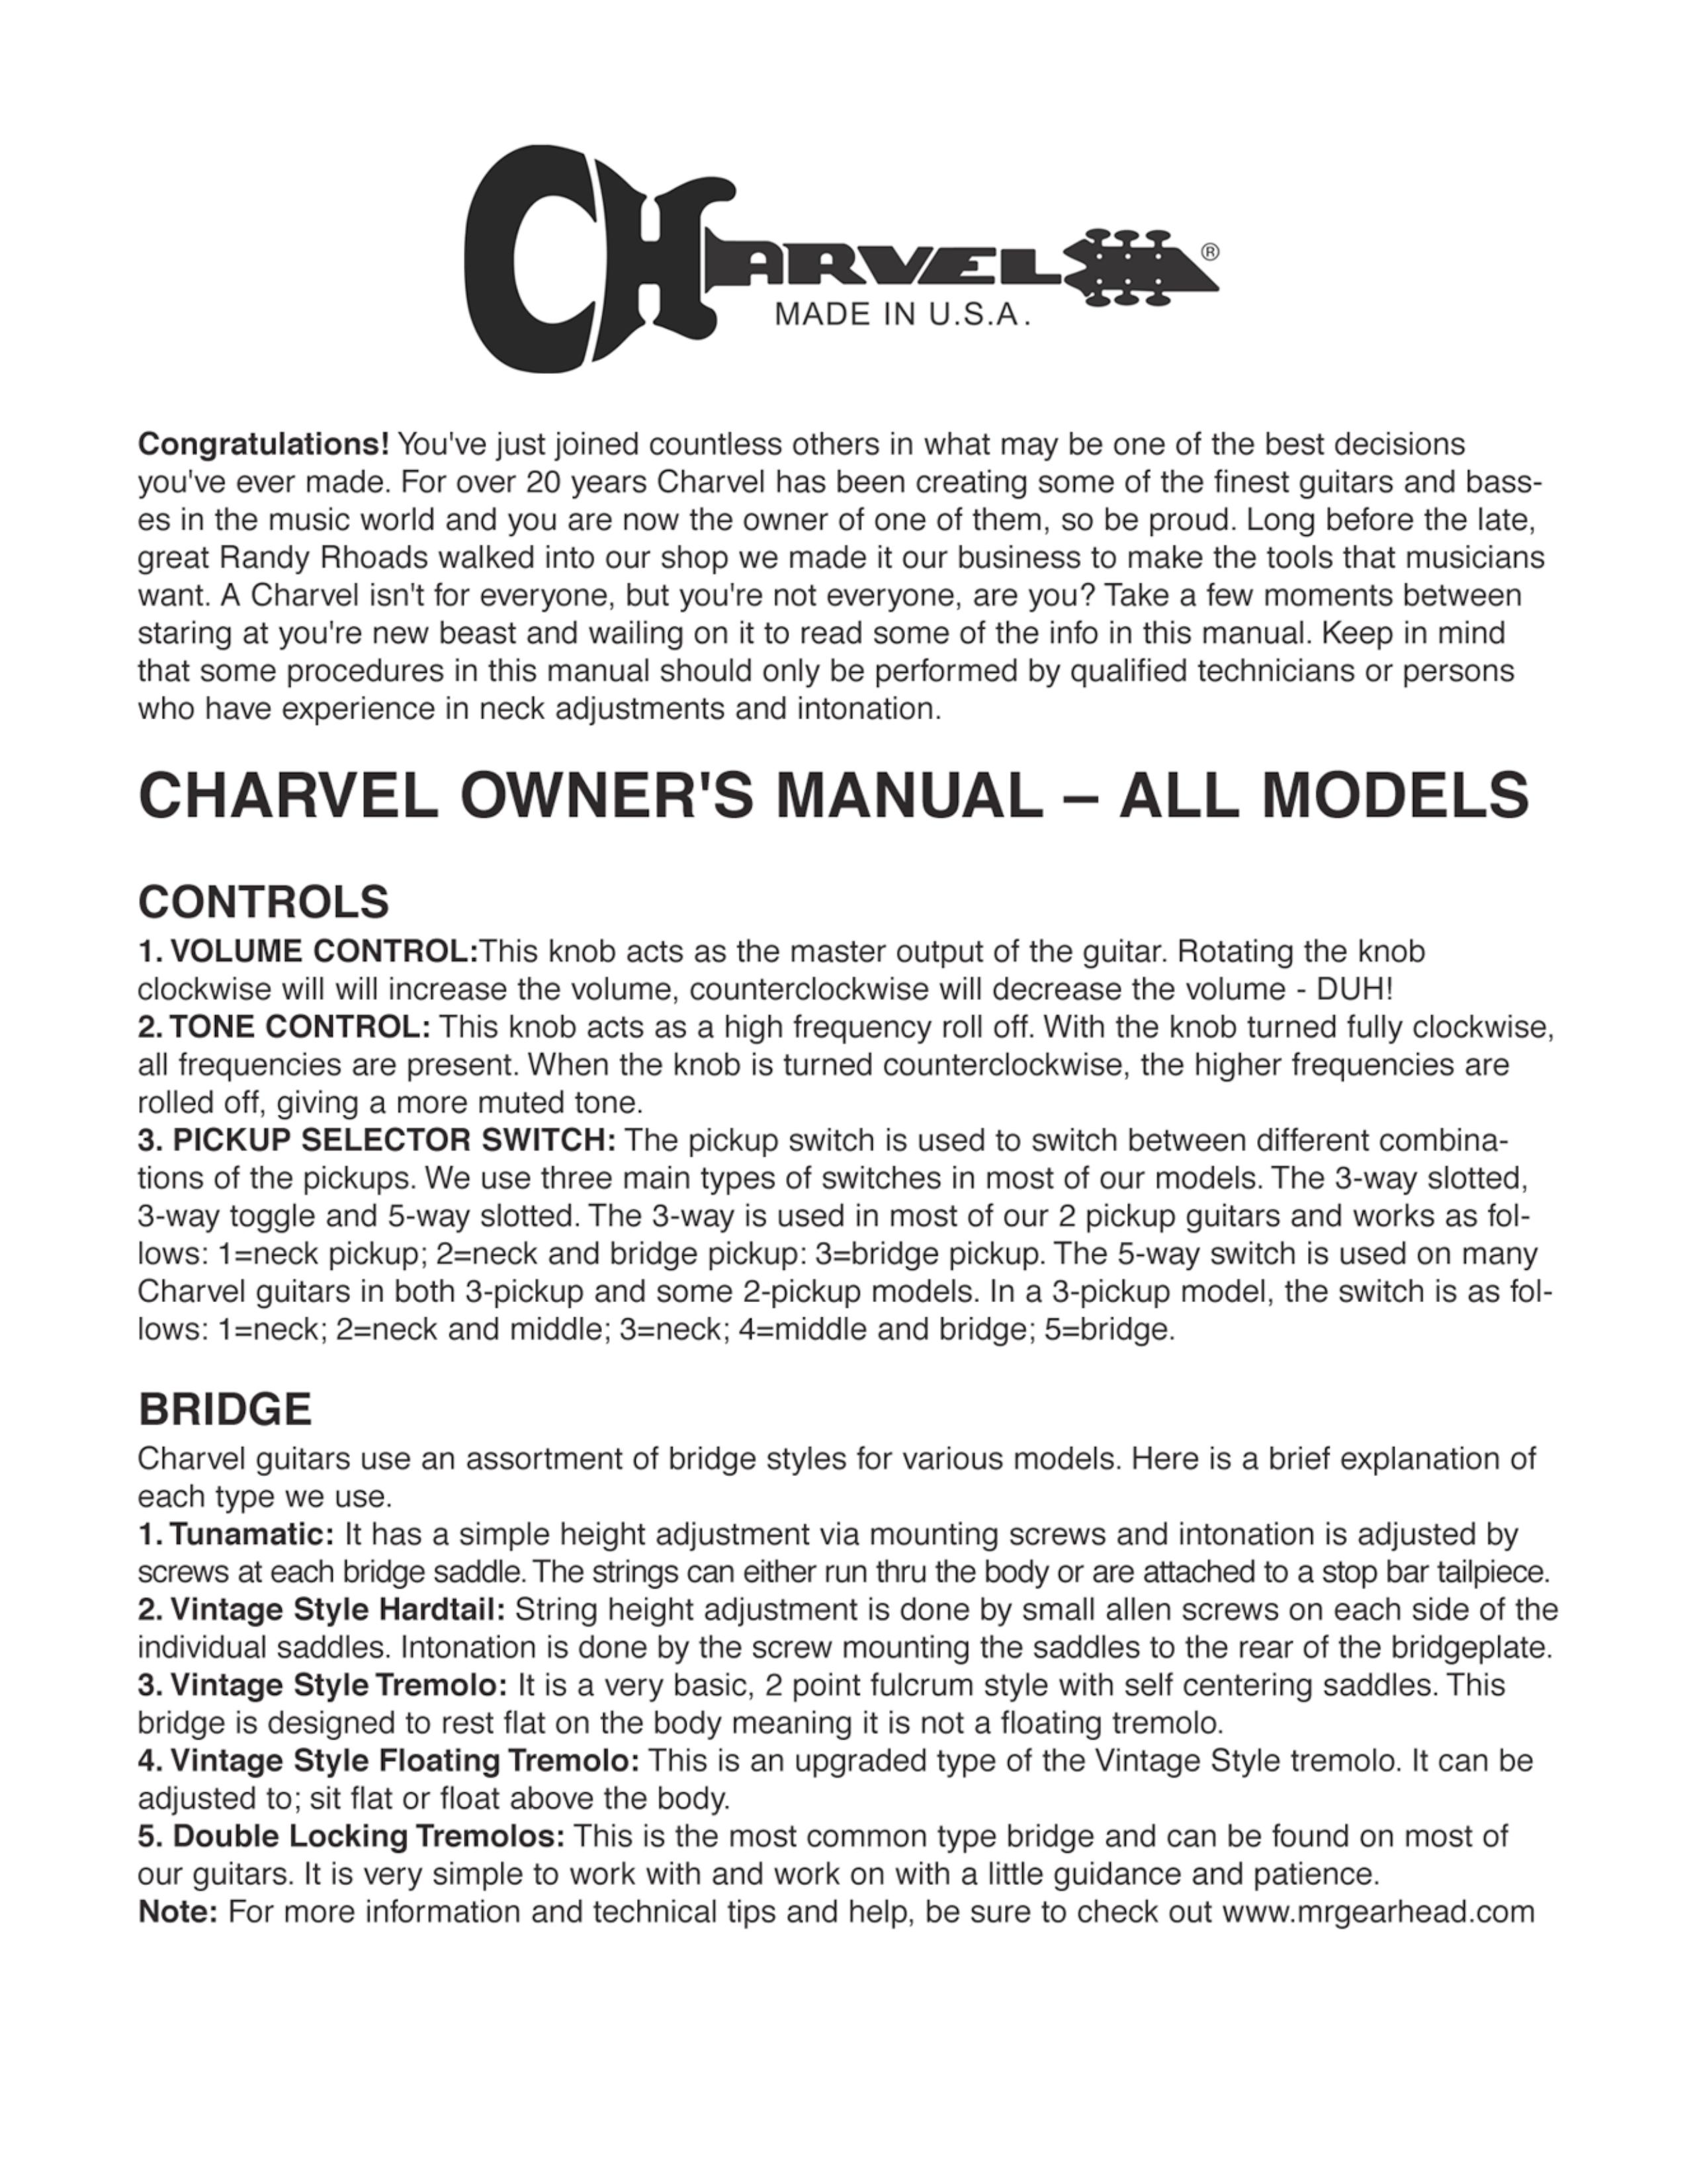 Charvel San Dimas Guitar Guitar User Manual